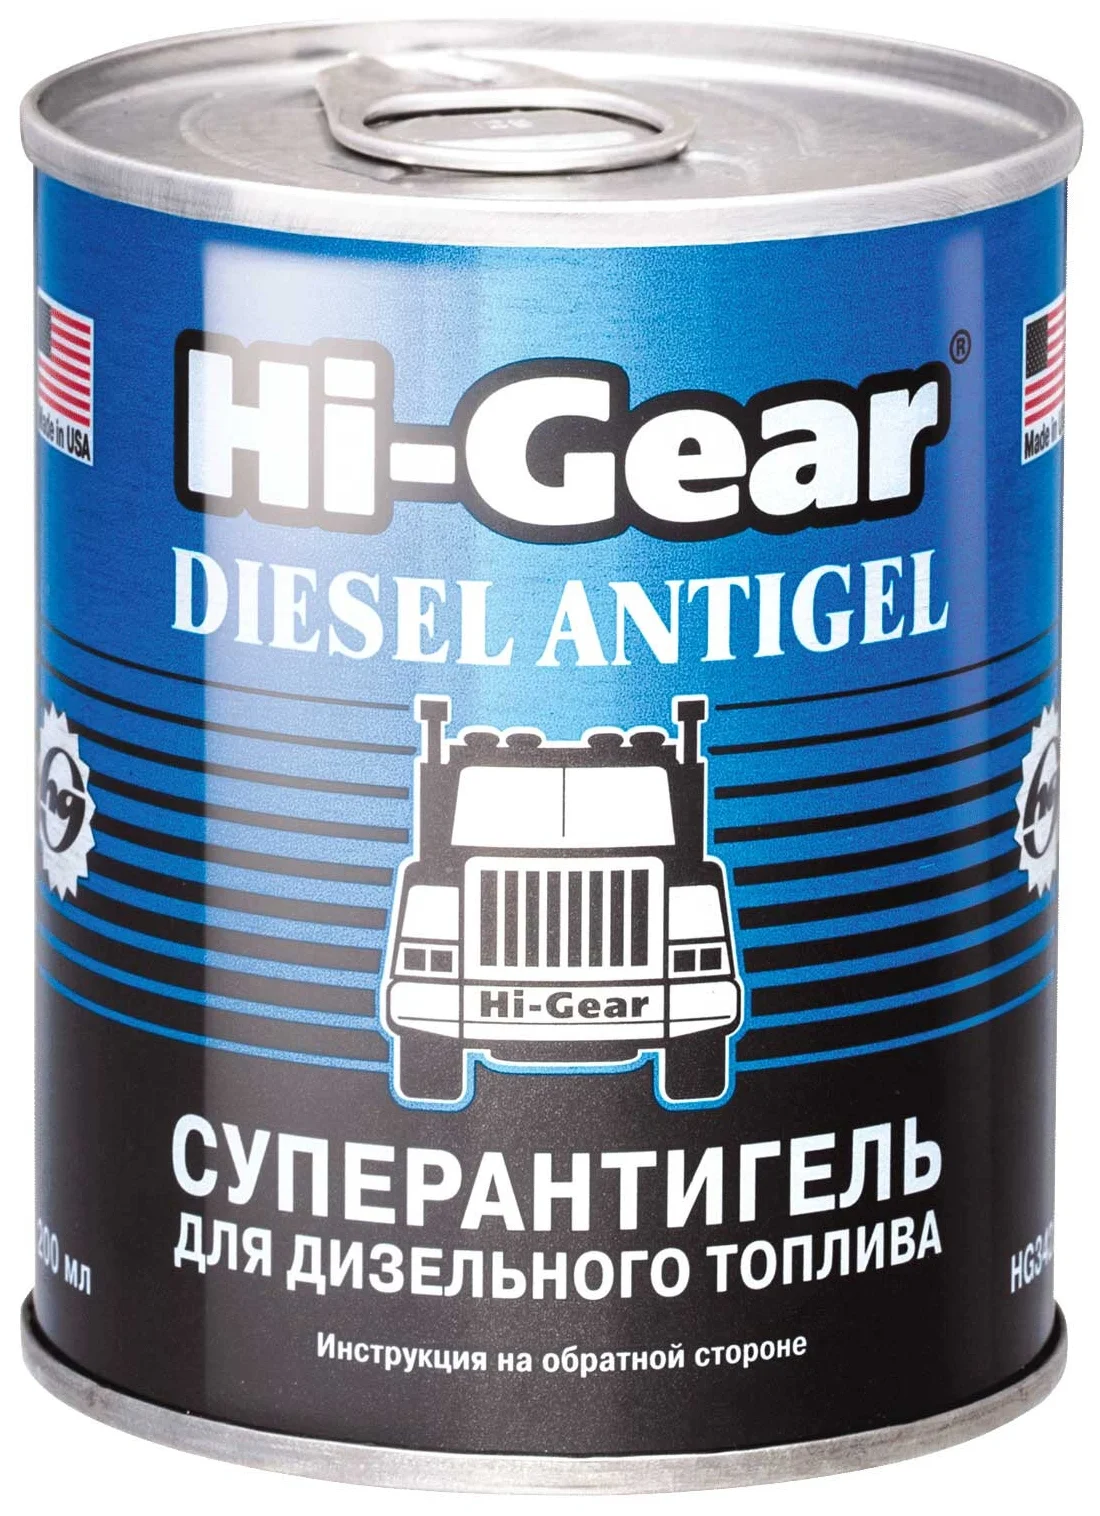 Hi-Gear Diesel Antigel - тип: присадка